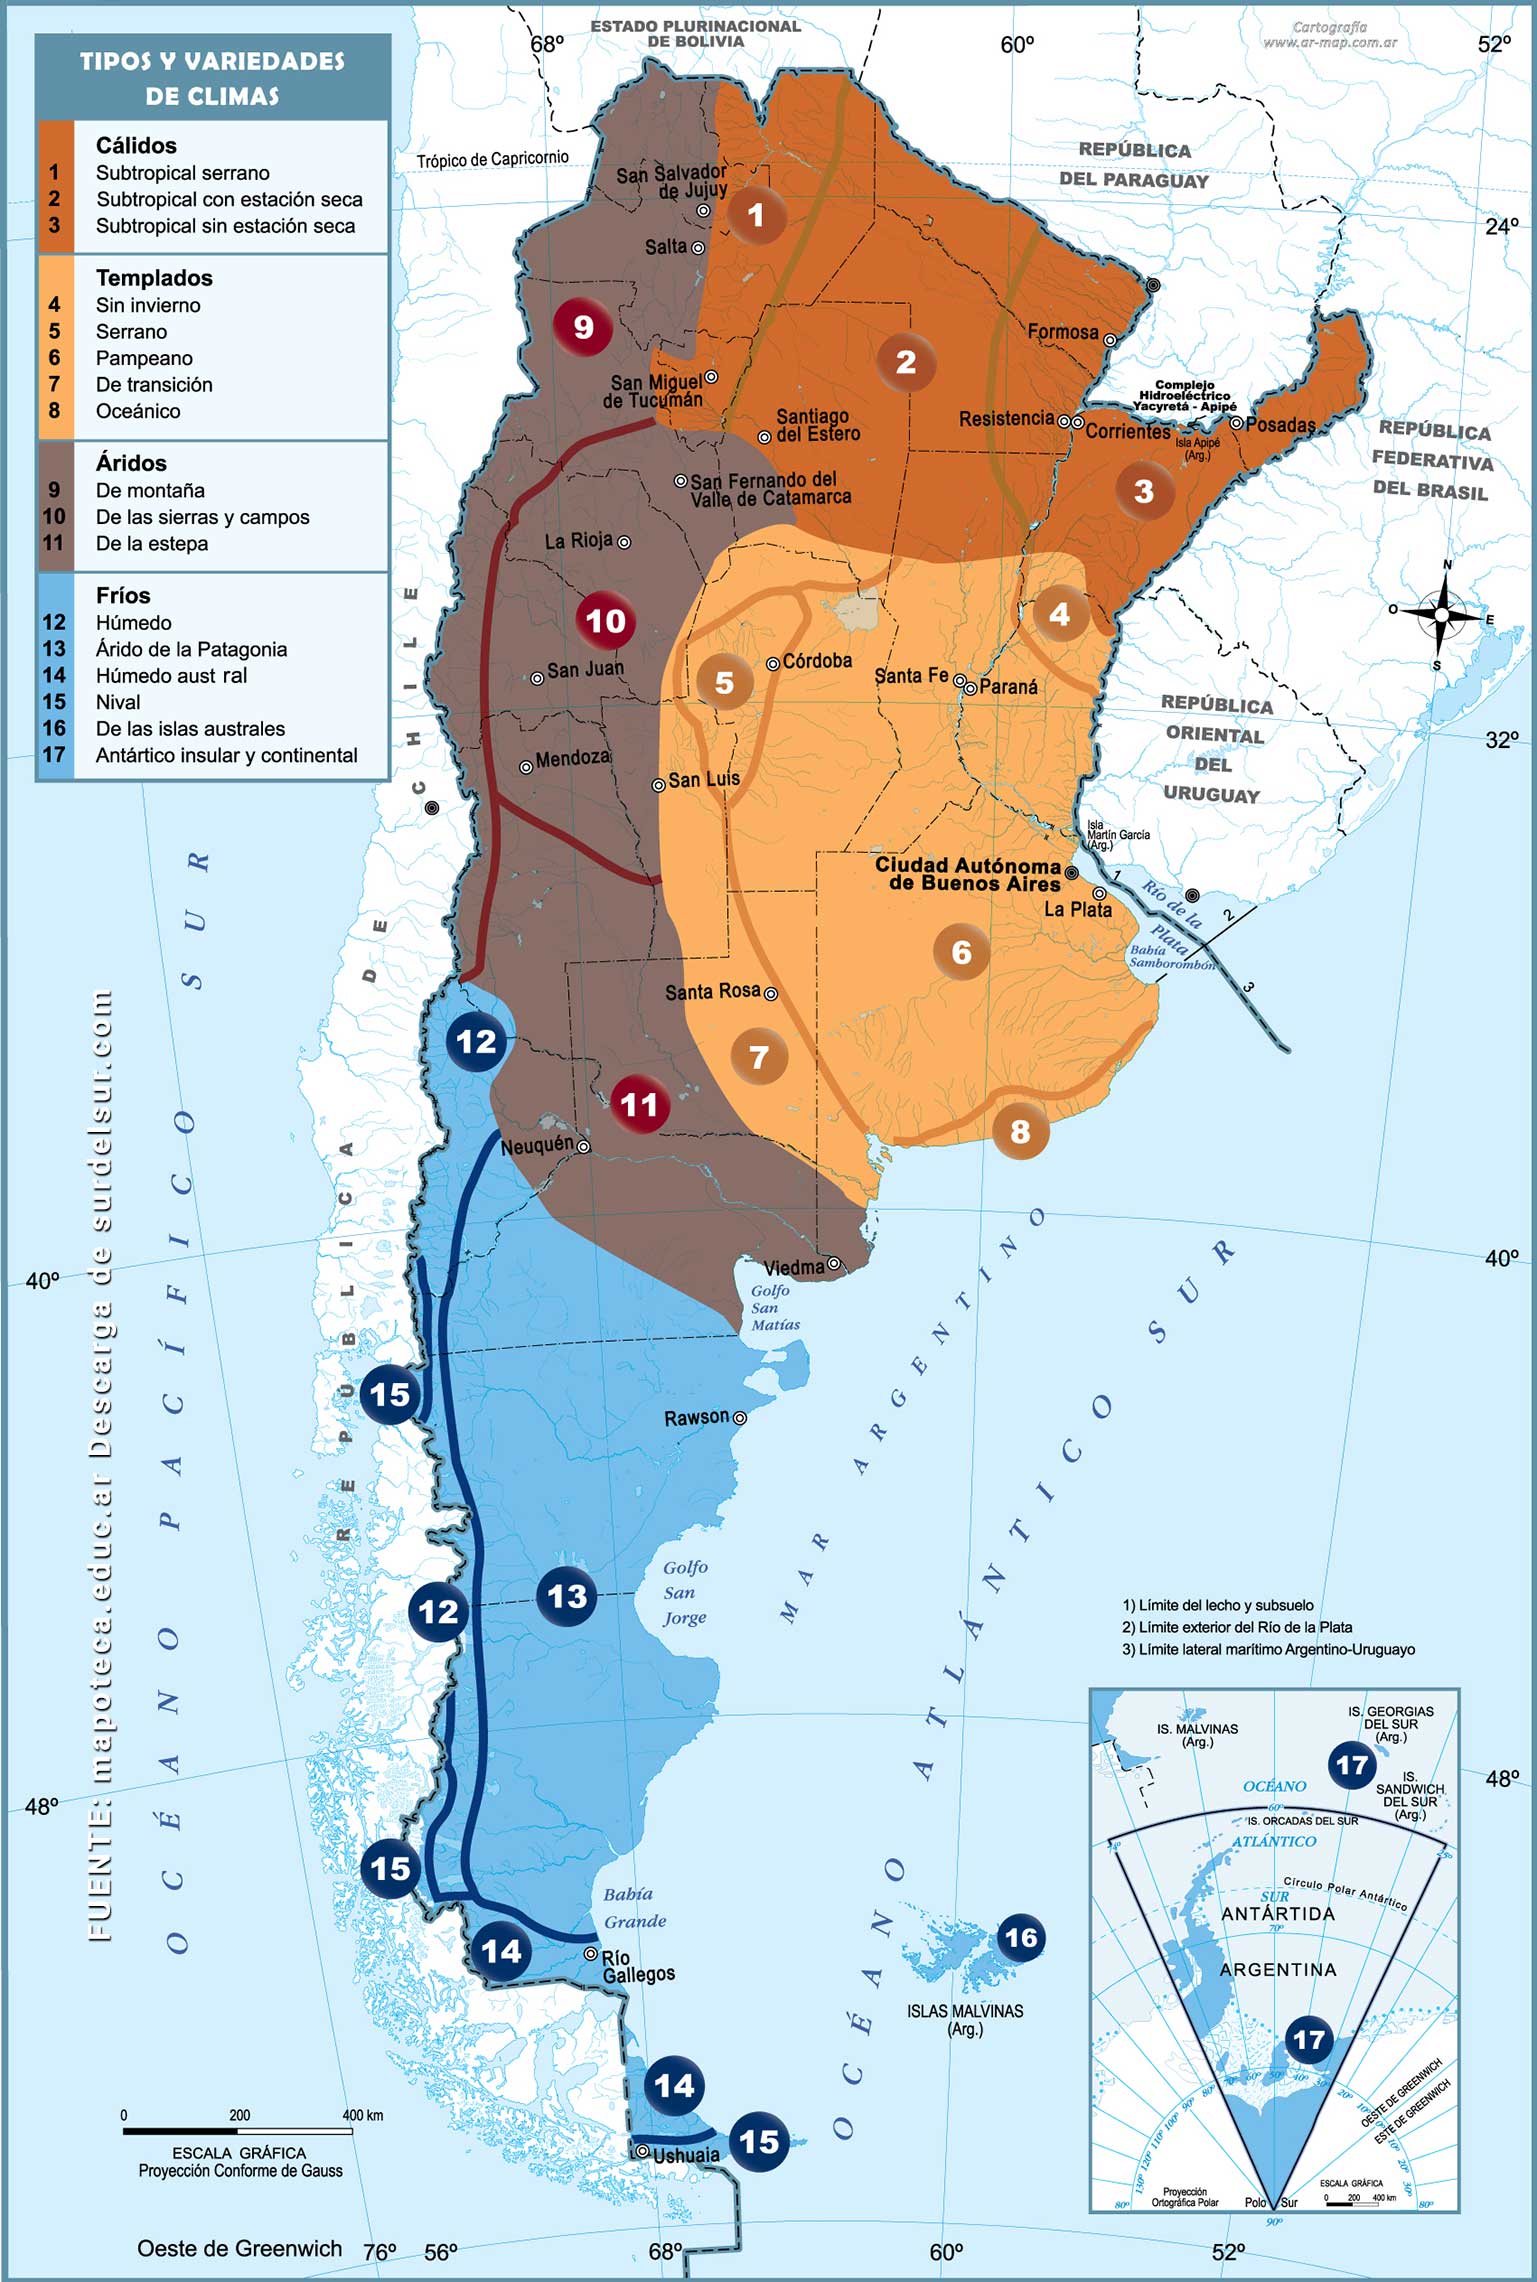 Mapa de variedad de climas de Argentina: cálido, templado, árido y frío con 17 variedades diferentes